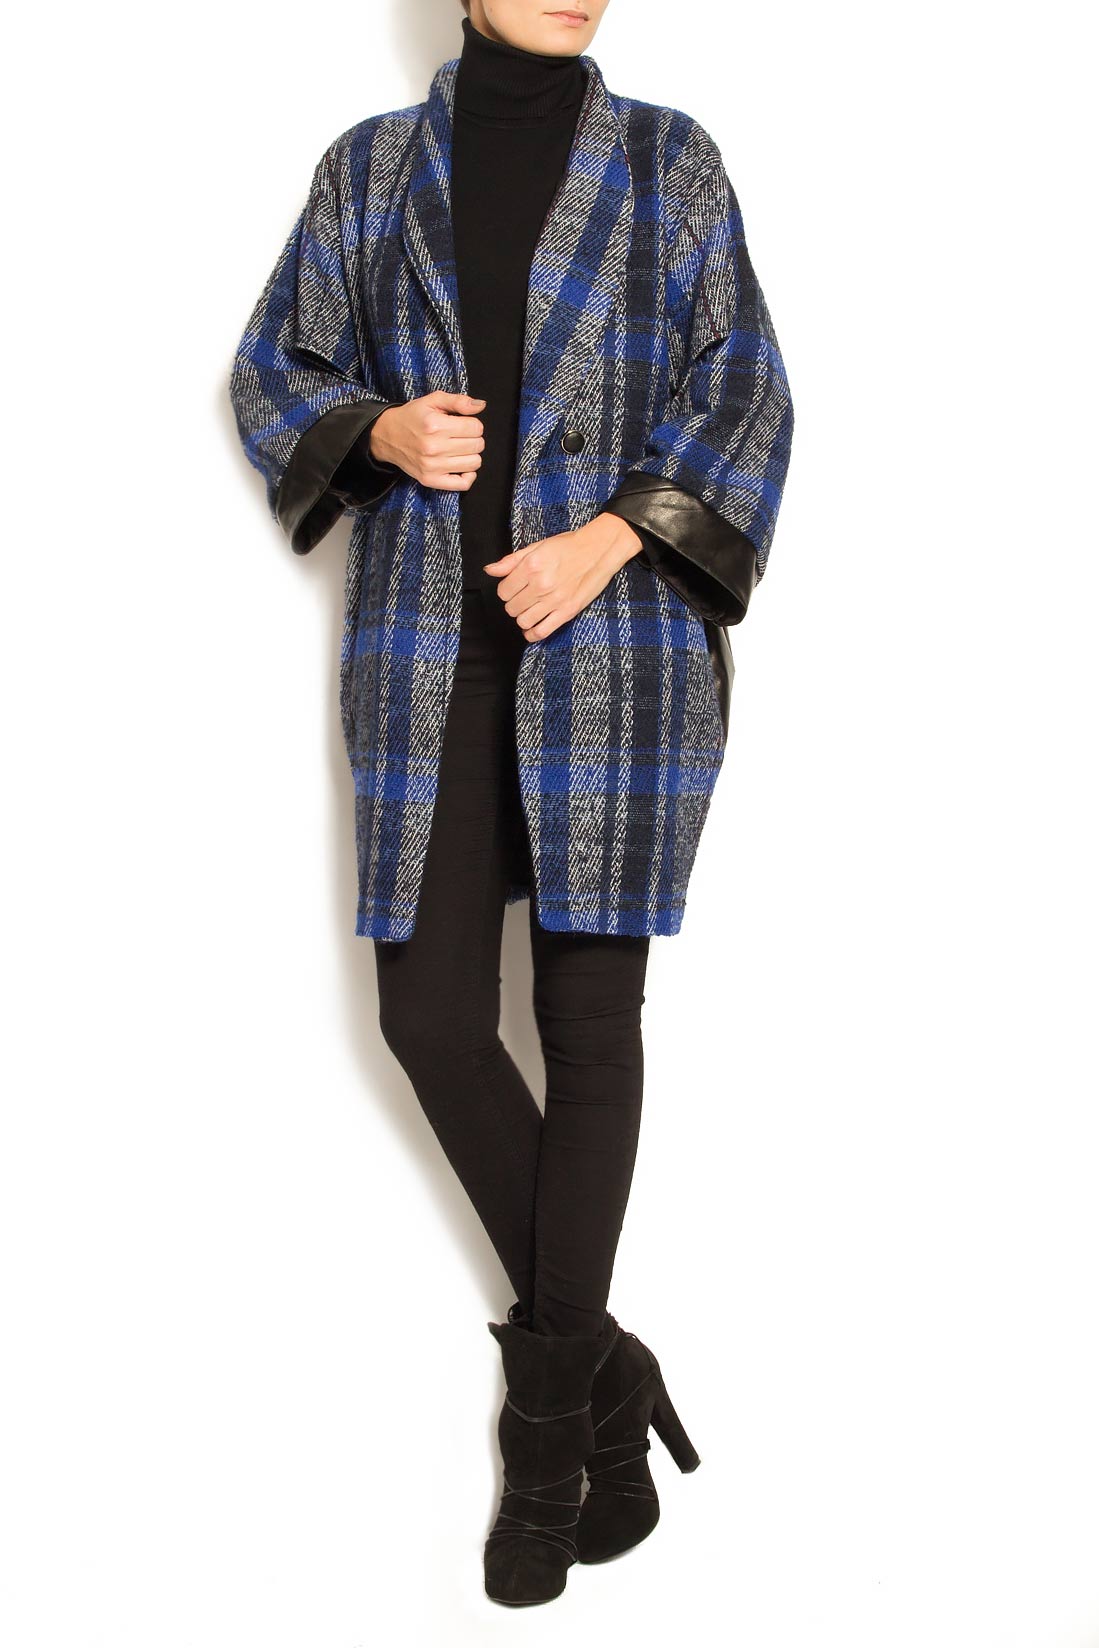 Palton din lana cu insertii din piele Elena Perseil imagine 1